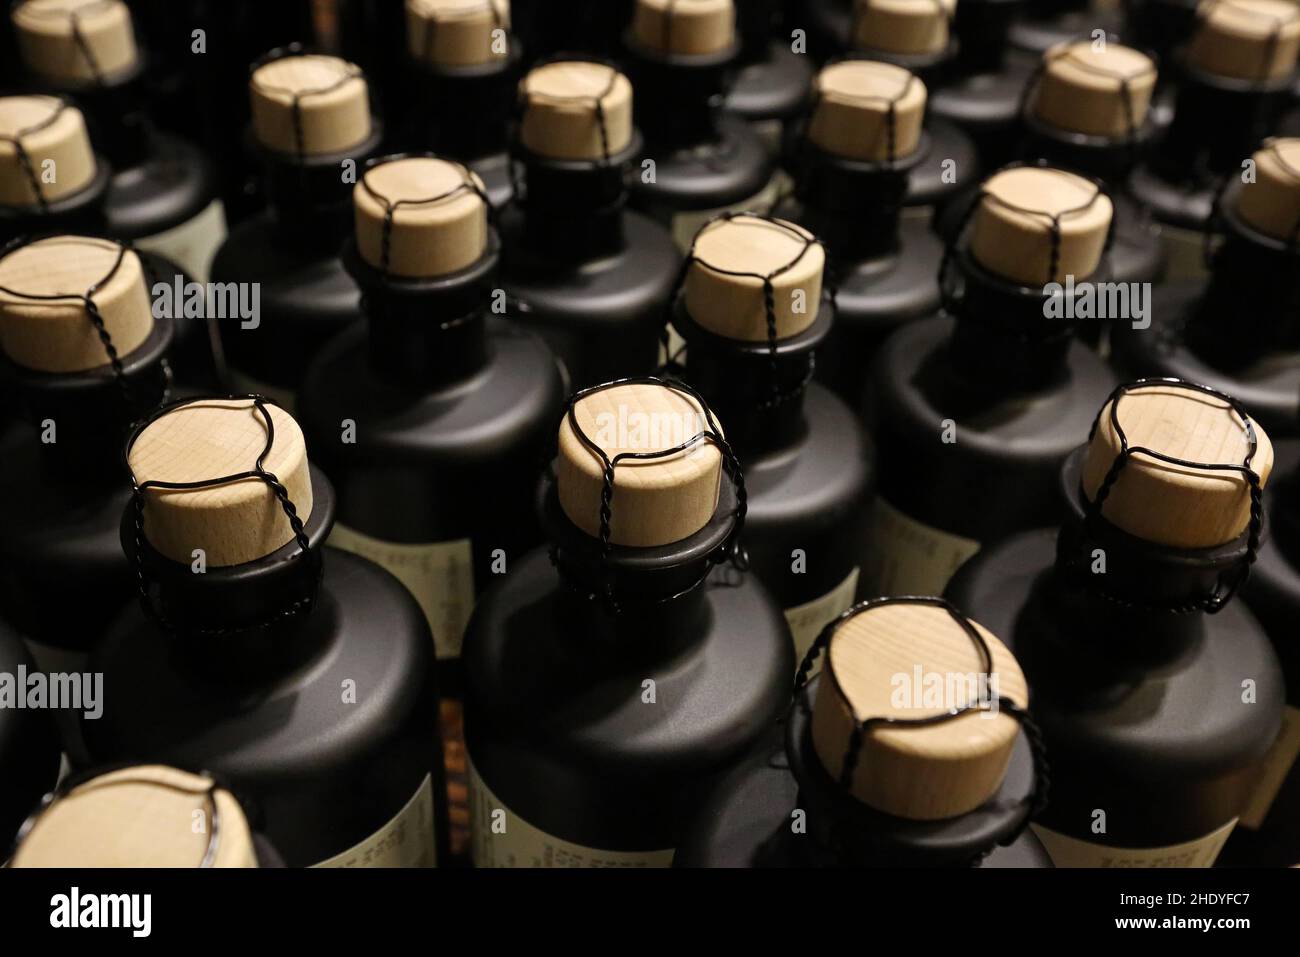 bottle stopper, bottle, bottle stoppers, bottles Stock Photo